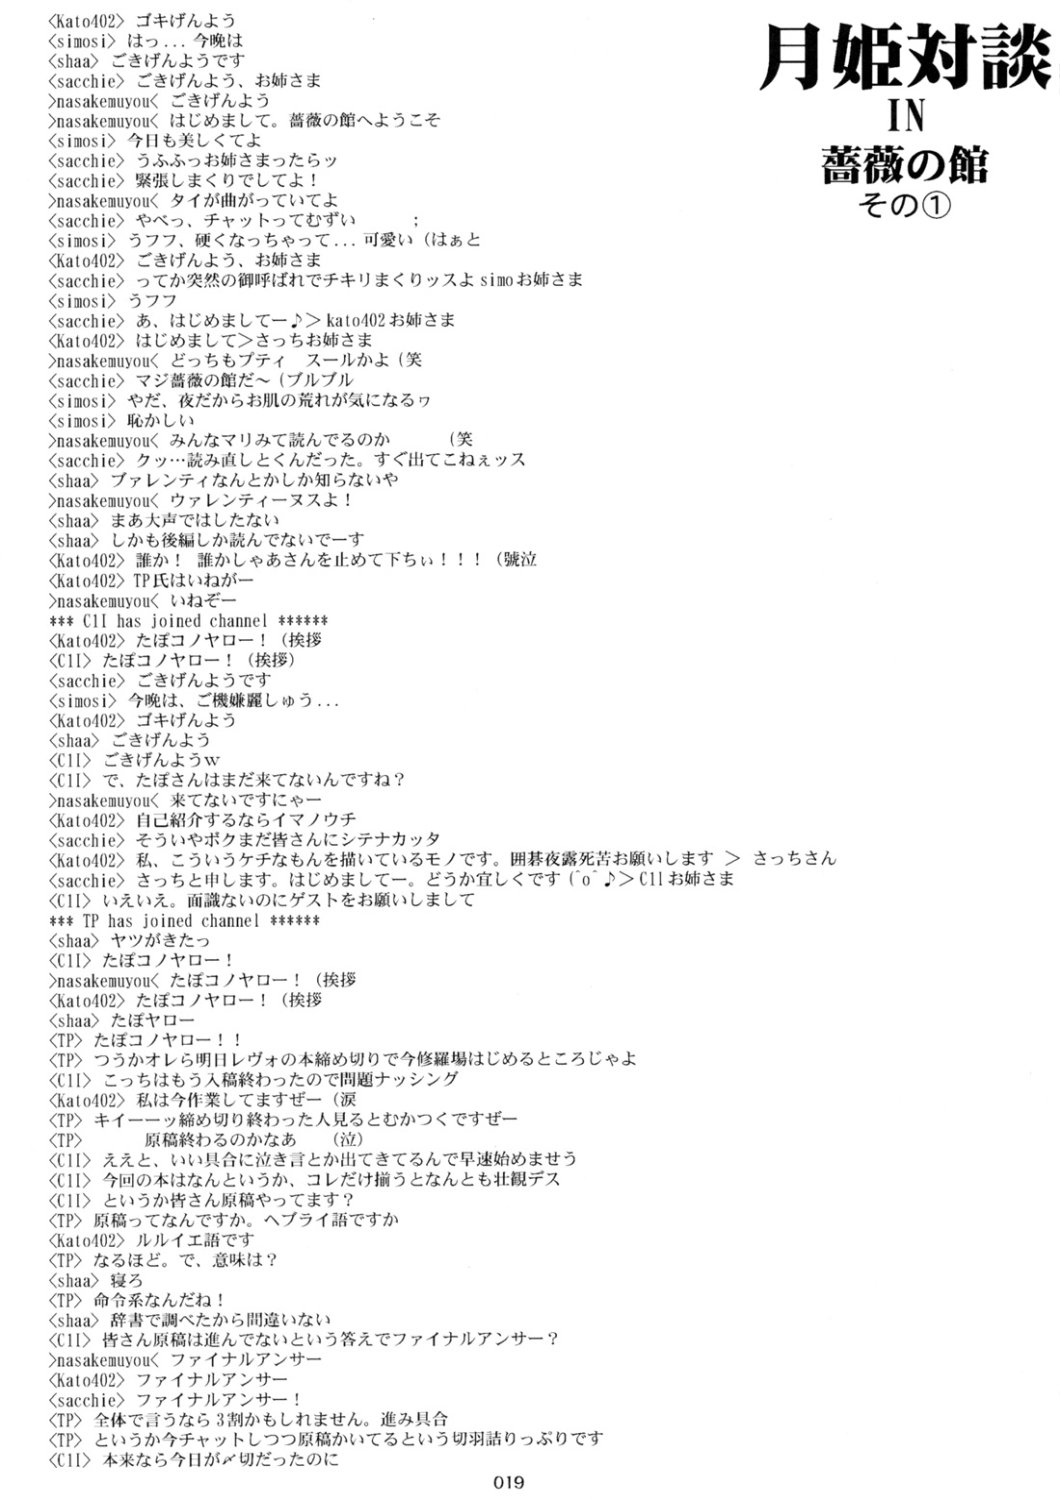 [Inochi no Furusato, Neko-bus Tei, Zangyaku Koui Teate] Akihamania [AKIHA MANIACS] (Tsukihime) page 18 full